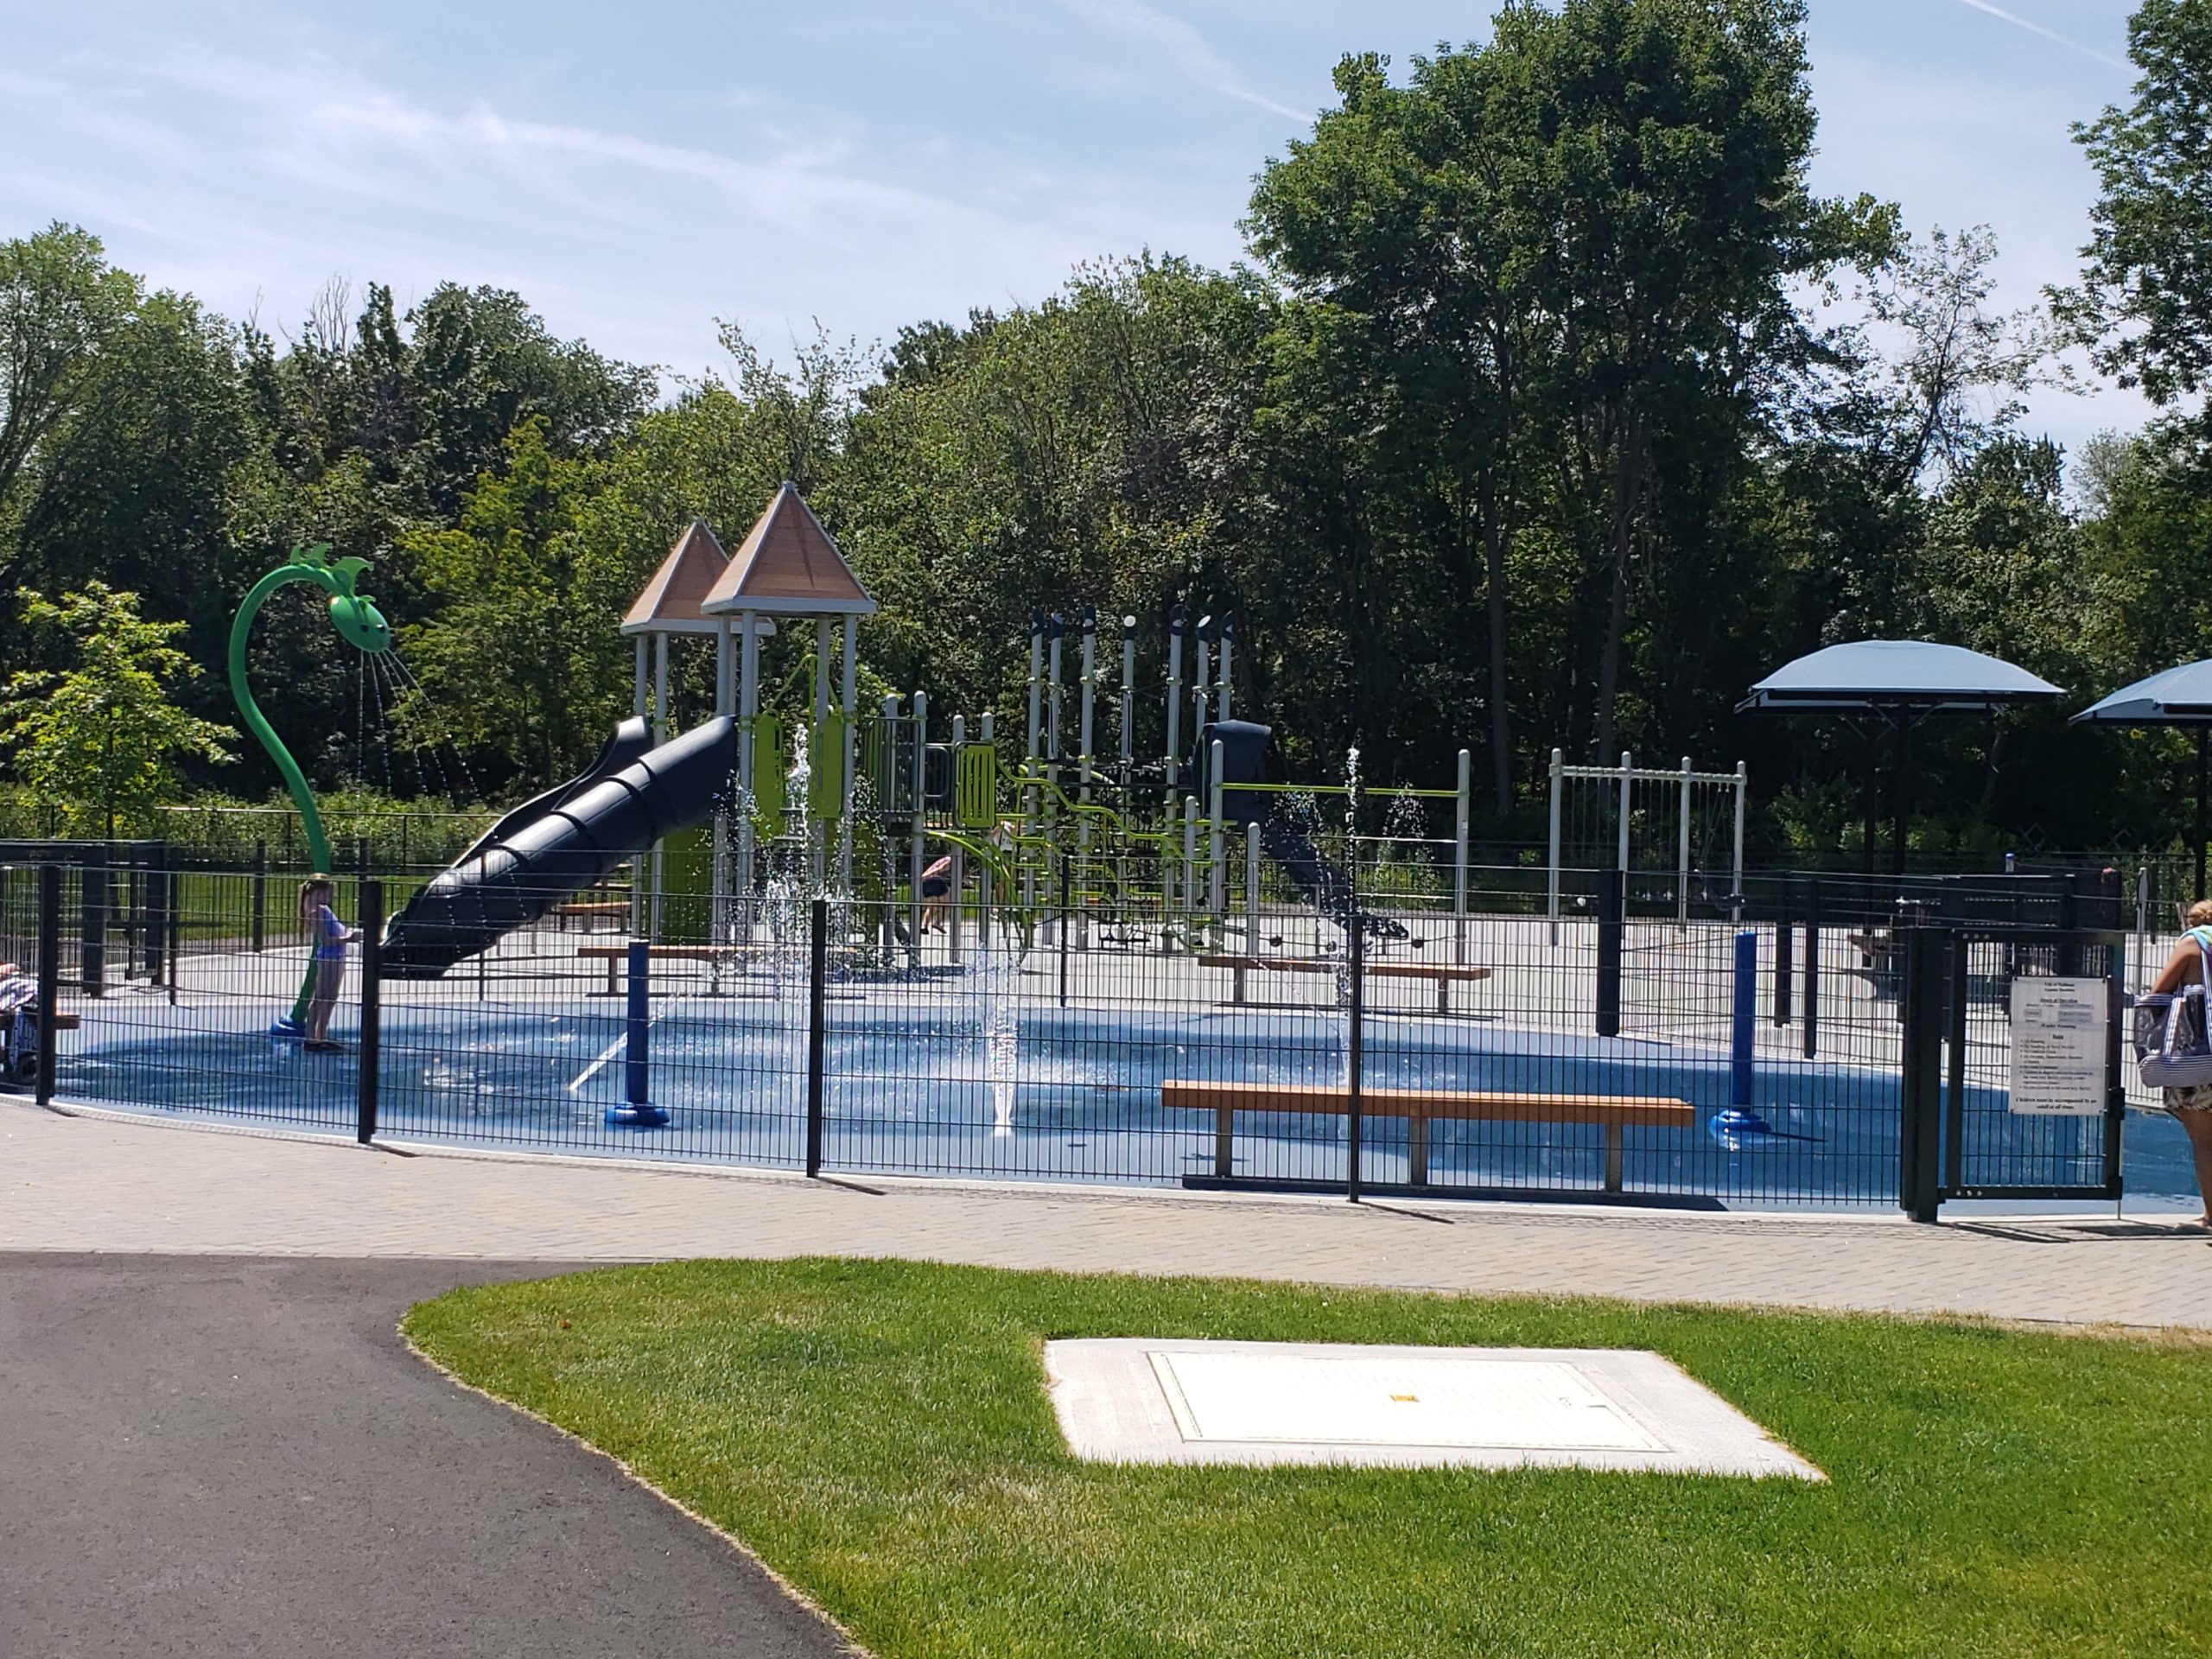 Graverson Park Waltham Massachusetts Landscape Structures playground Vortex Splashpad